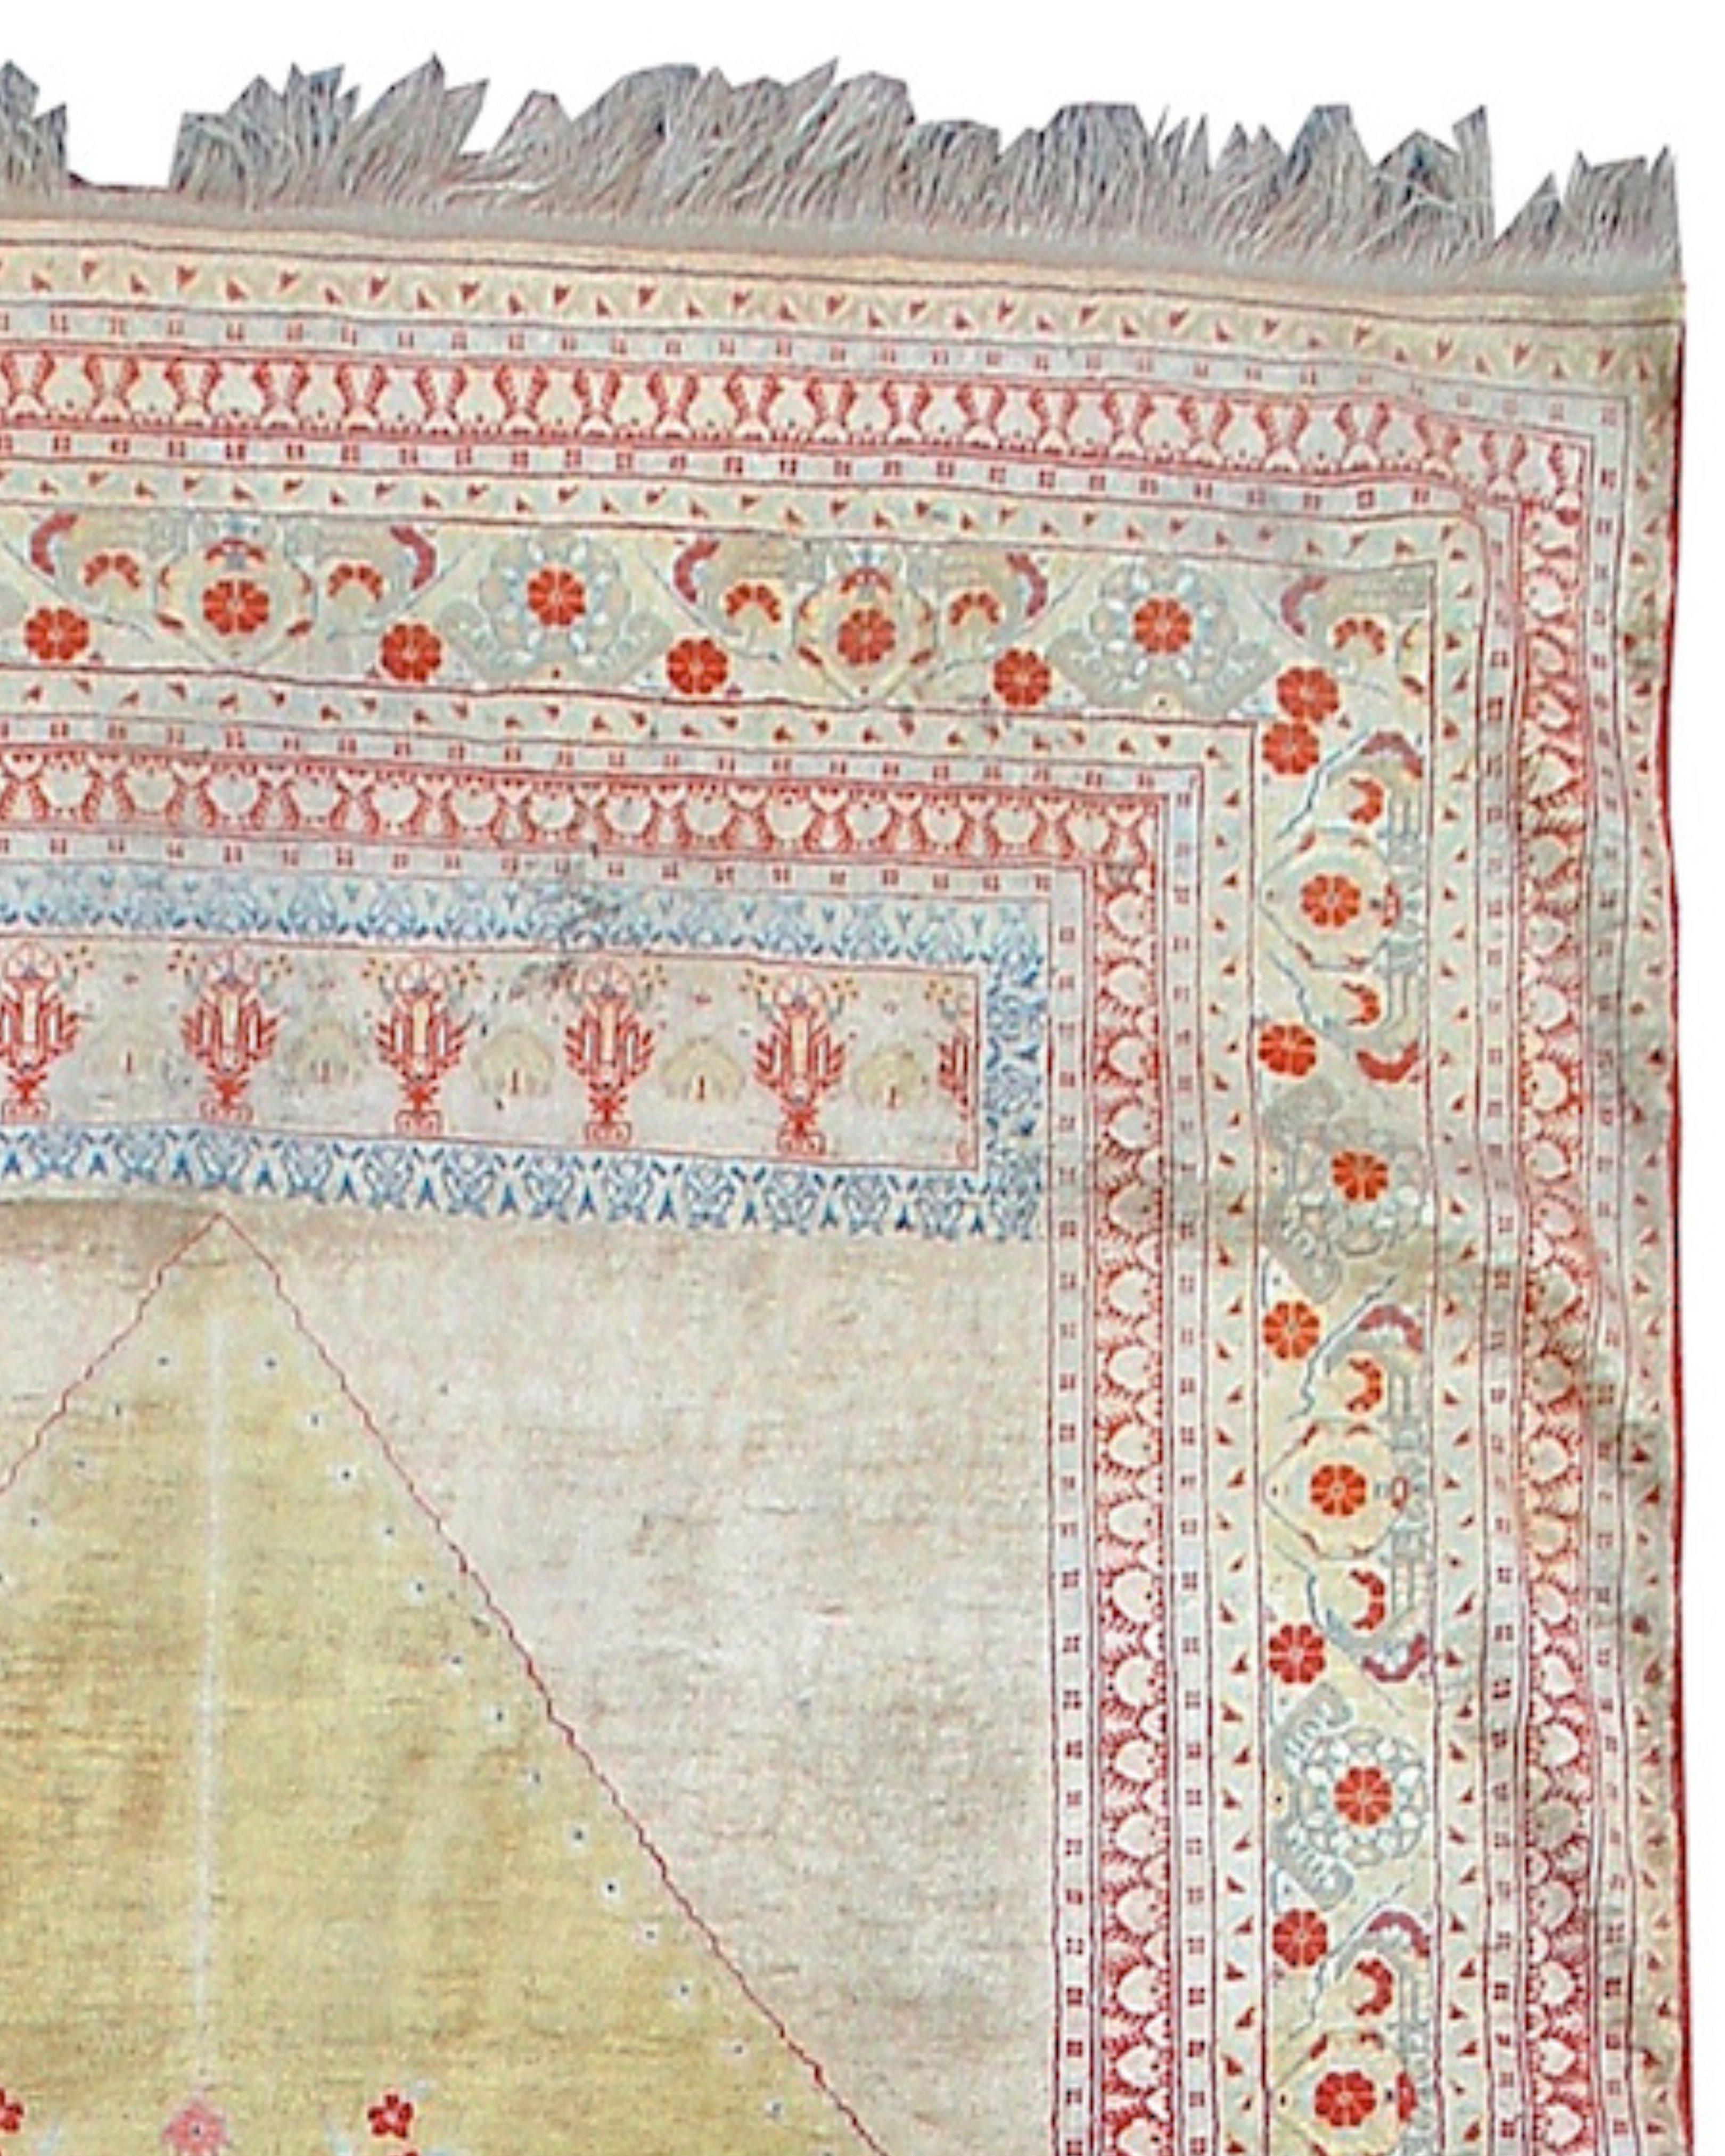 Seiden-Tabriz-Teppich, 19. Jahrhundert

Dieser glänzende persische Seidengebetsteppich verbindet traditionelle persische Ästhetik mit neoklassischem Stil. Markante architektonische Säulen flankieren einen zentralen Kandelaber auf einem